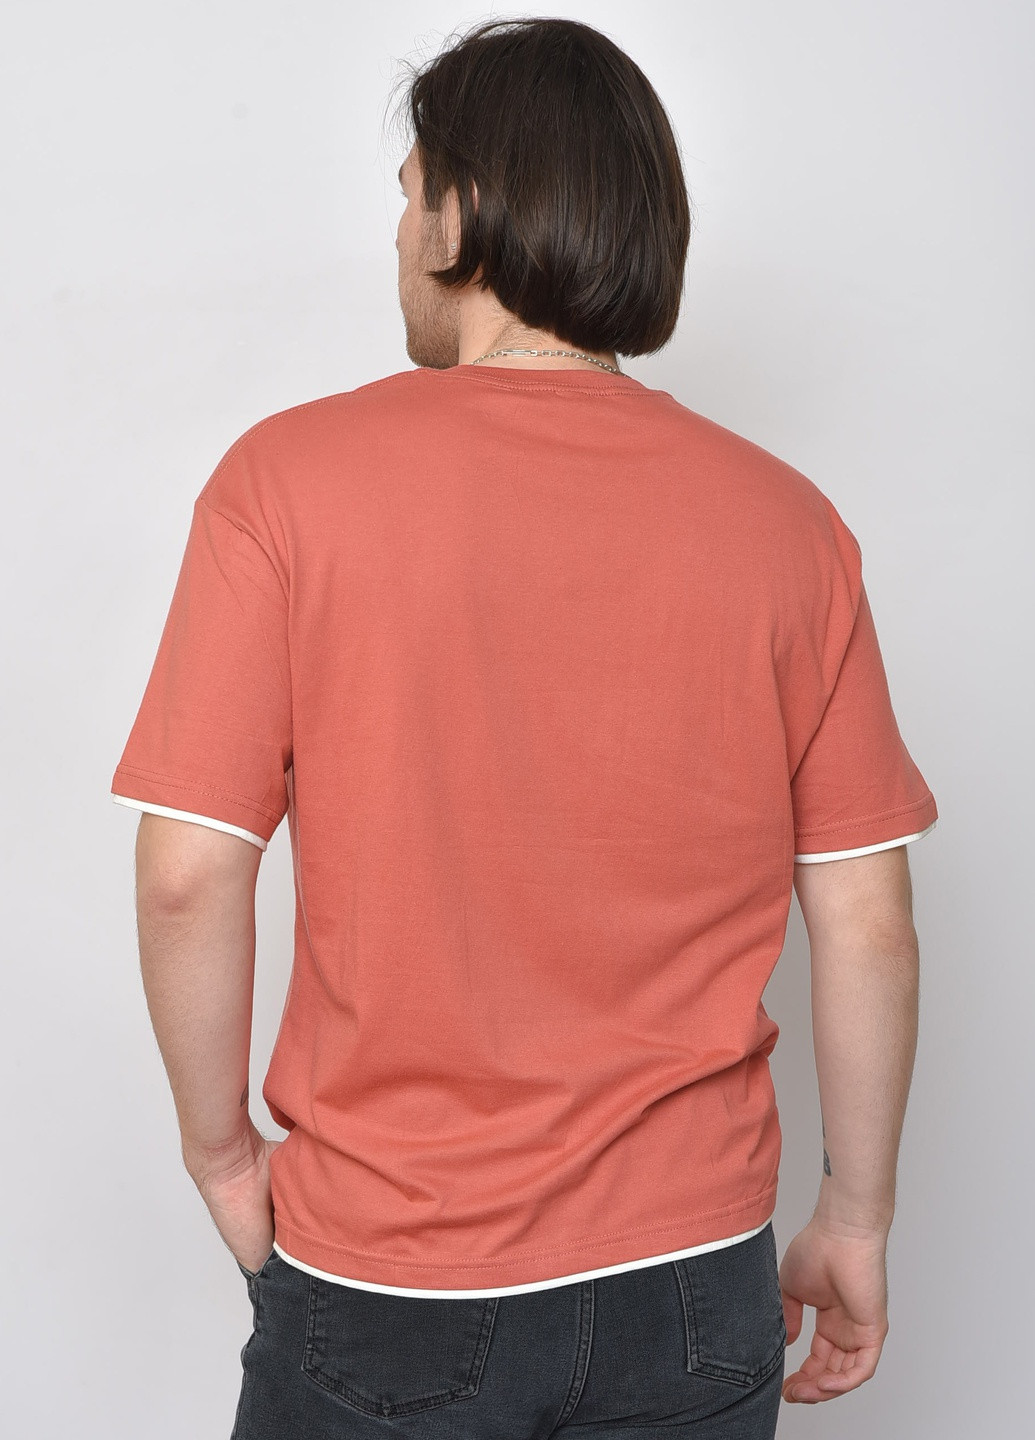 Теракотова футболка чоловіча однотонна теракотового кольору Let's Shop